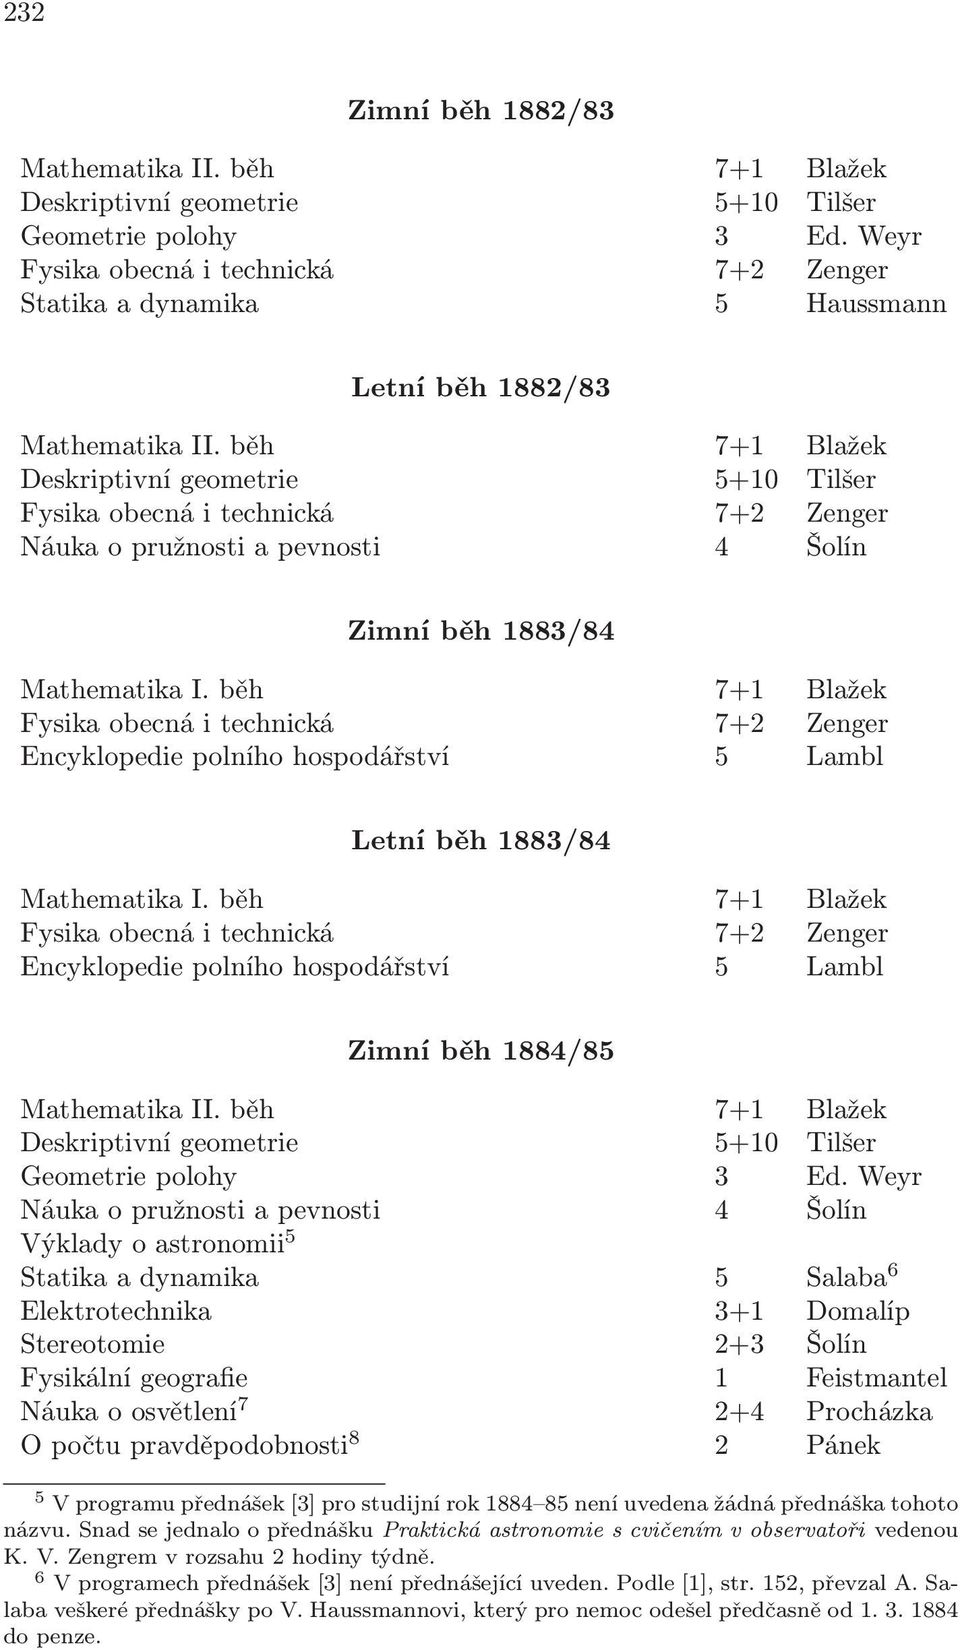 hospodářství 5 Lambl Zimní běh 1884/85 Geometrie polohy 3 Ed.